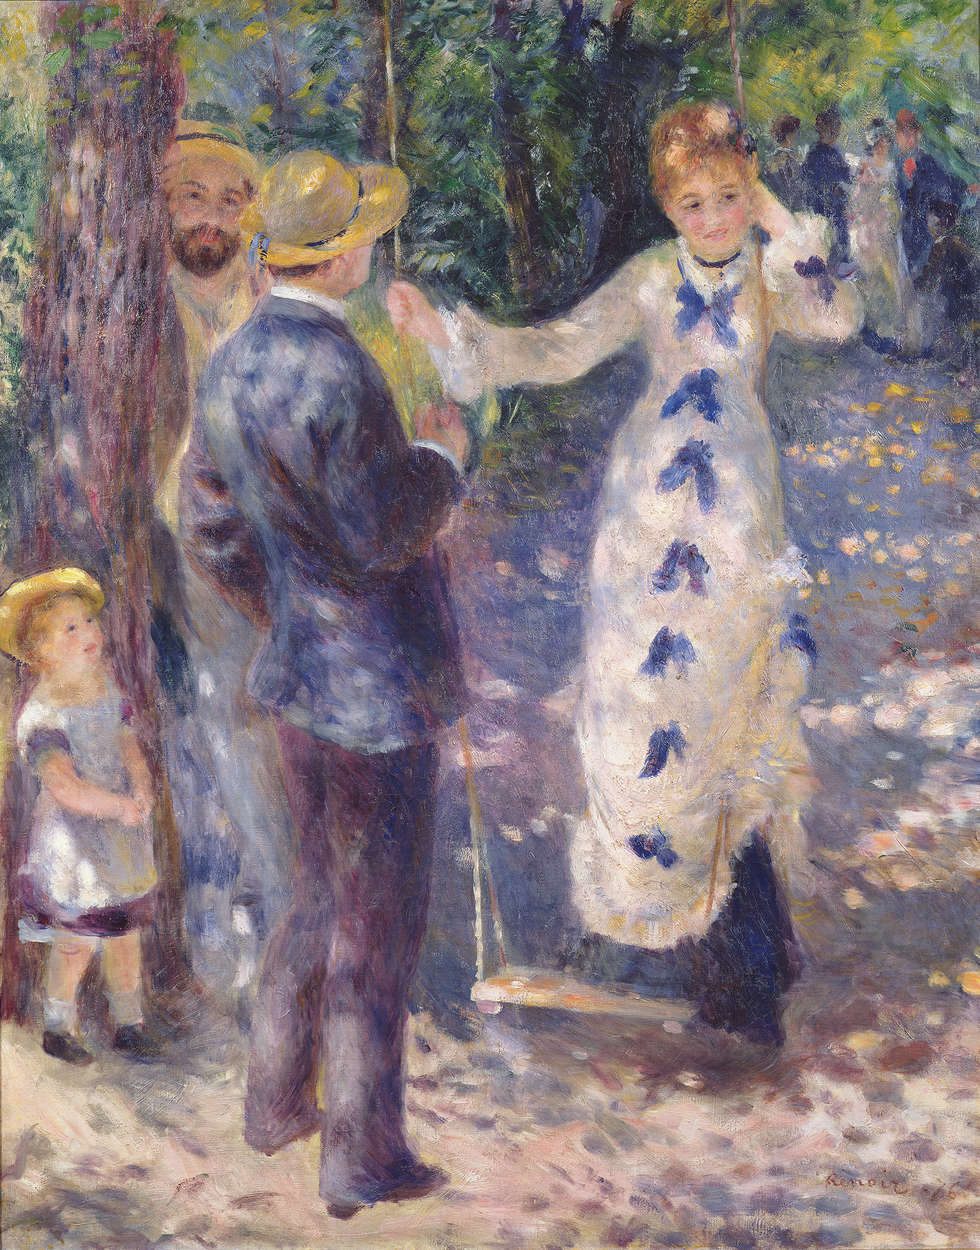             Fotomurali "Sull'altalena" di Pierre Auguste Renoir
        